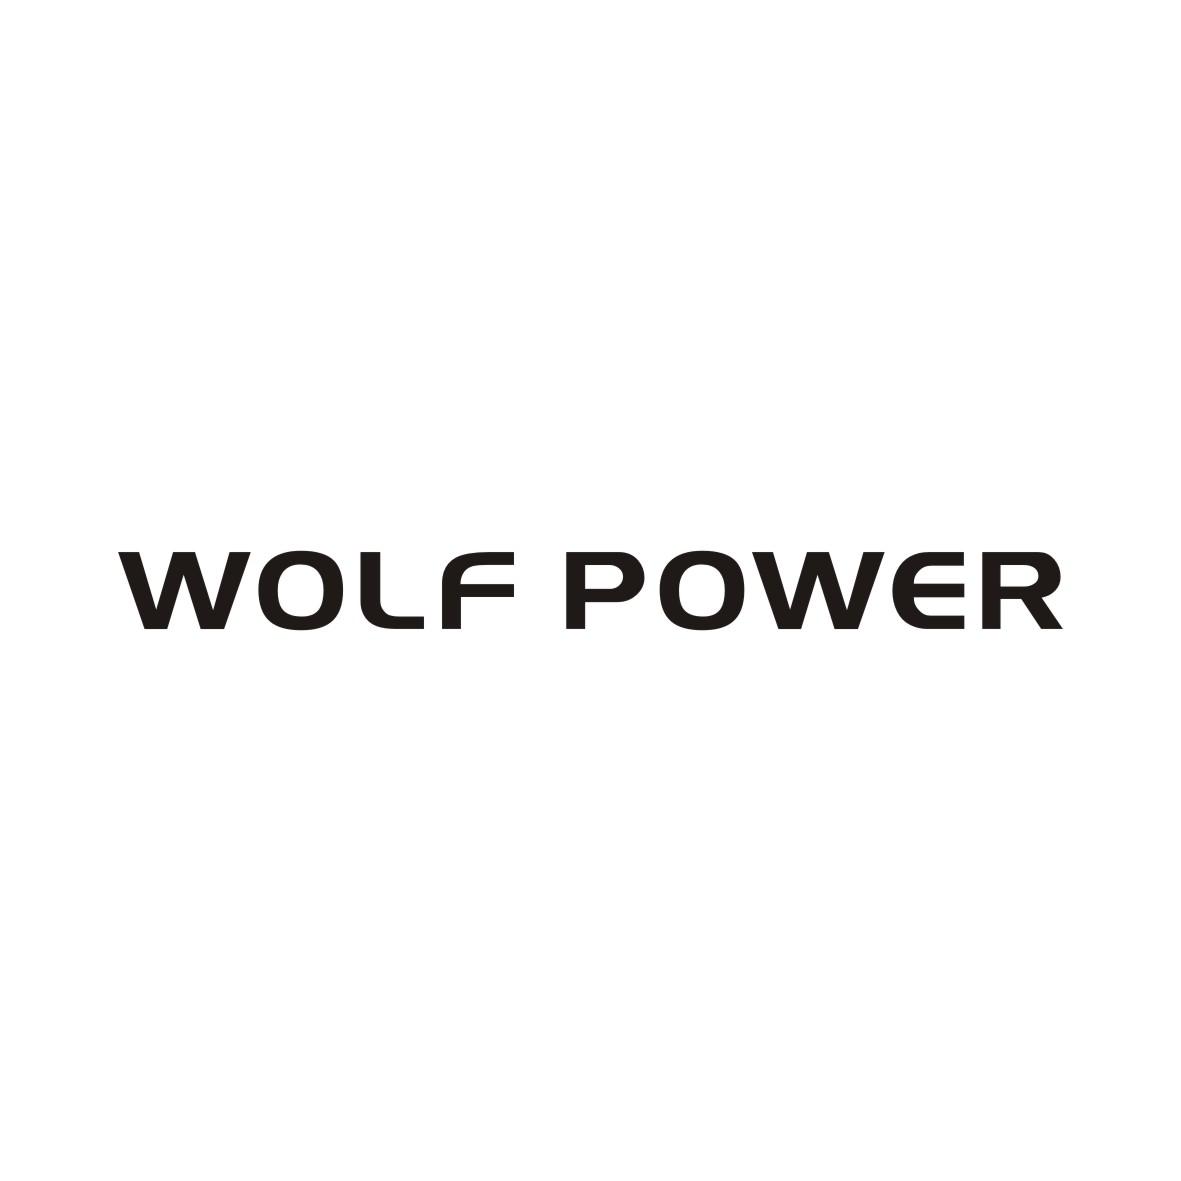 WOLF POWER